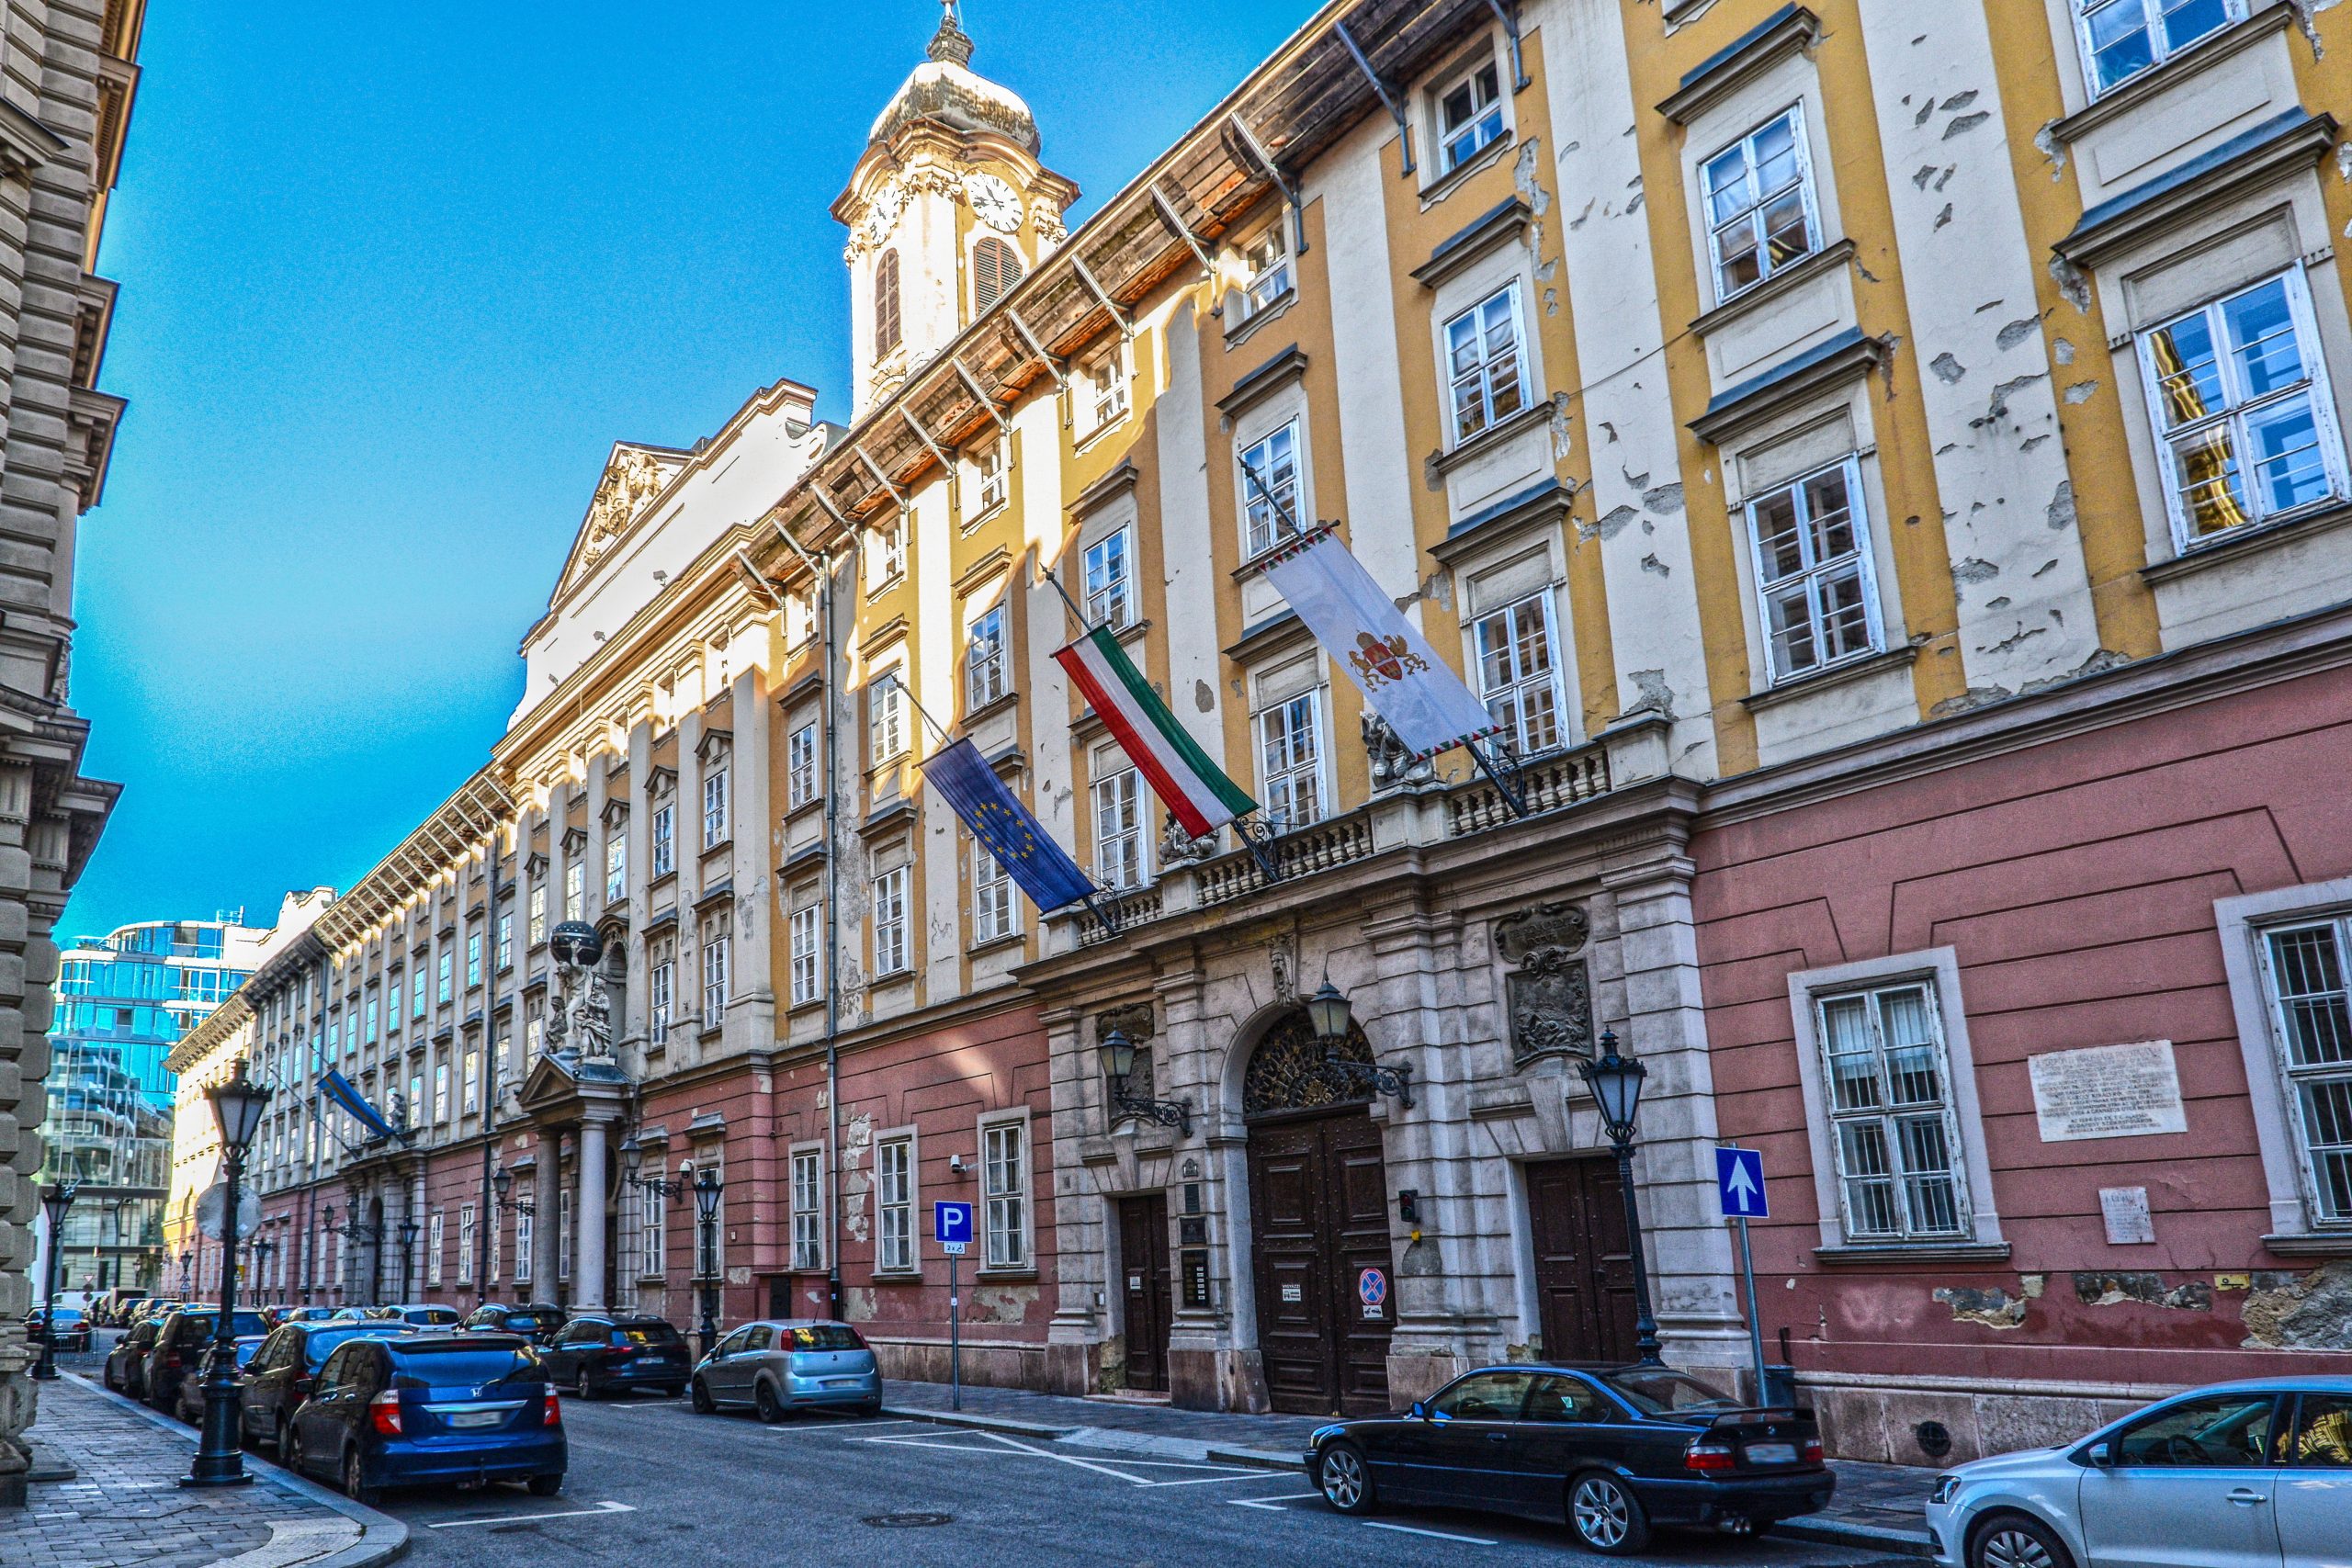 Durchsuchungen im Rathaus, Budapester Bürgermeister spricht von 